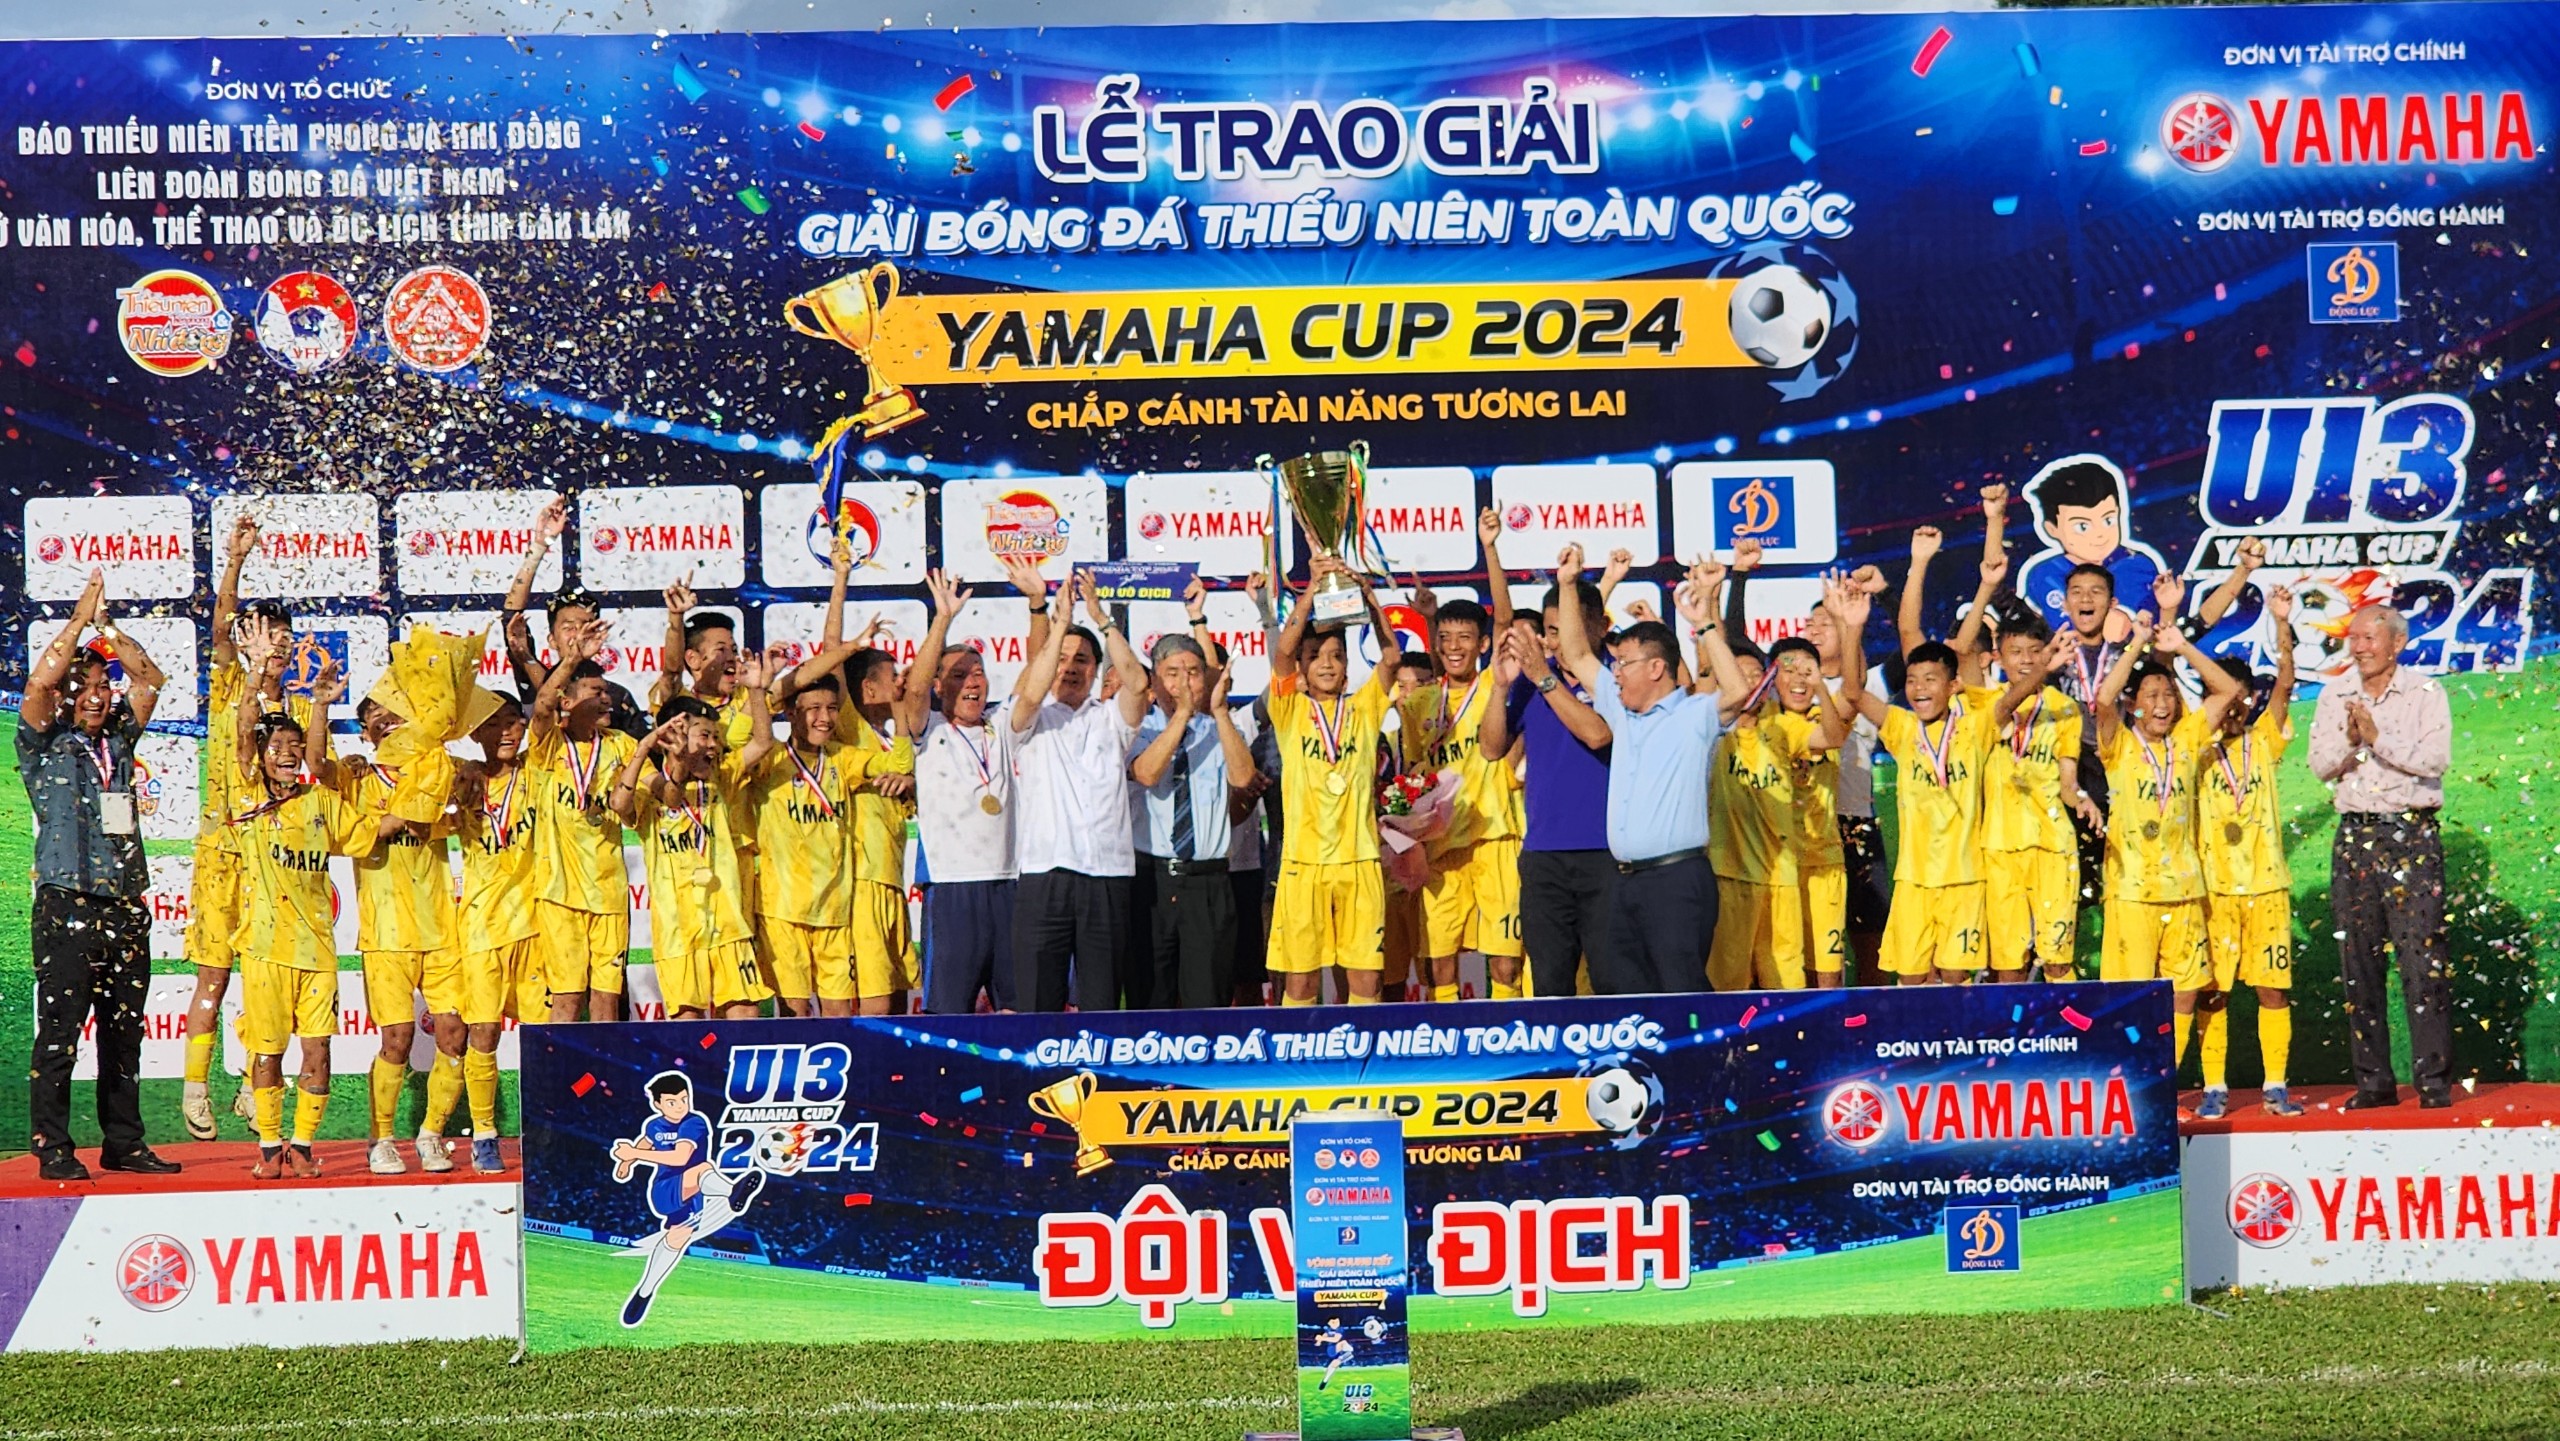 Sông Lam Nghệ An bảo vệ thành công ngôi vô địch U13 toàn quốc